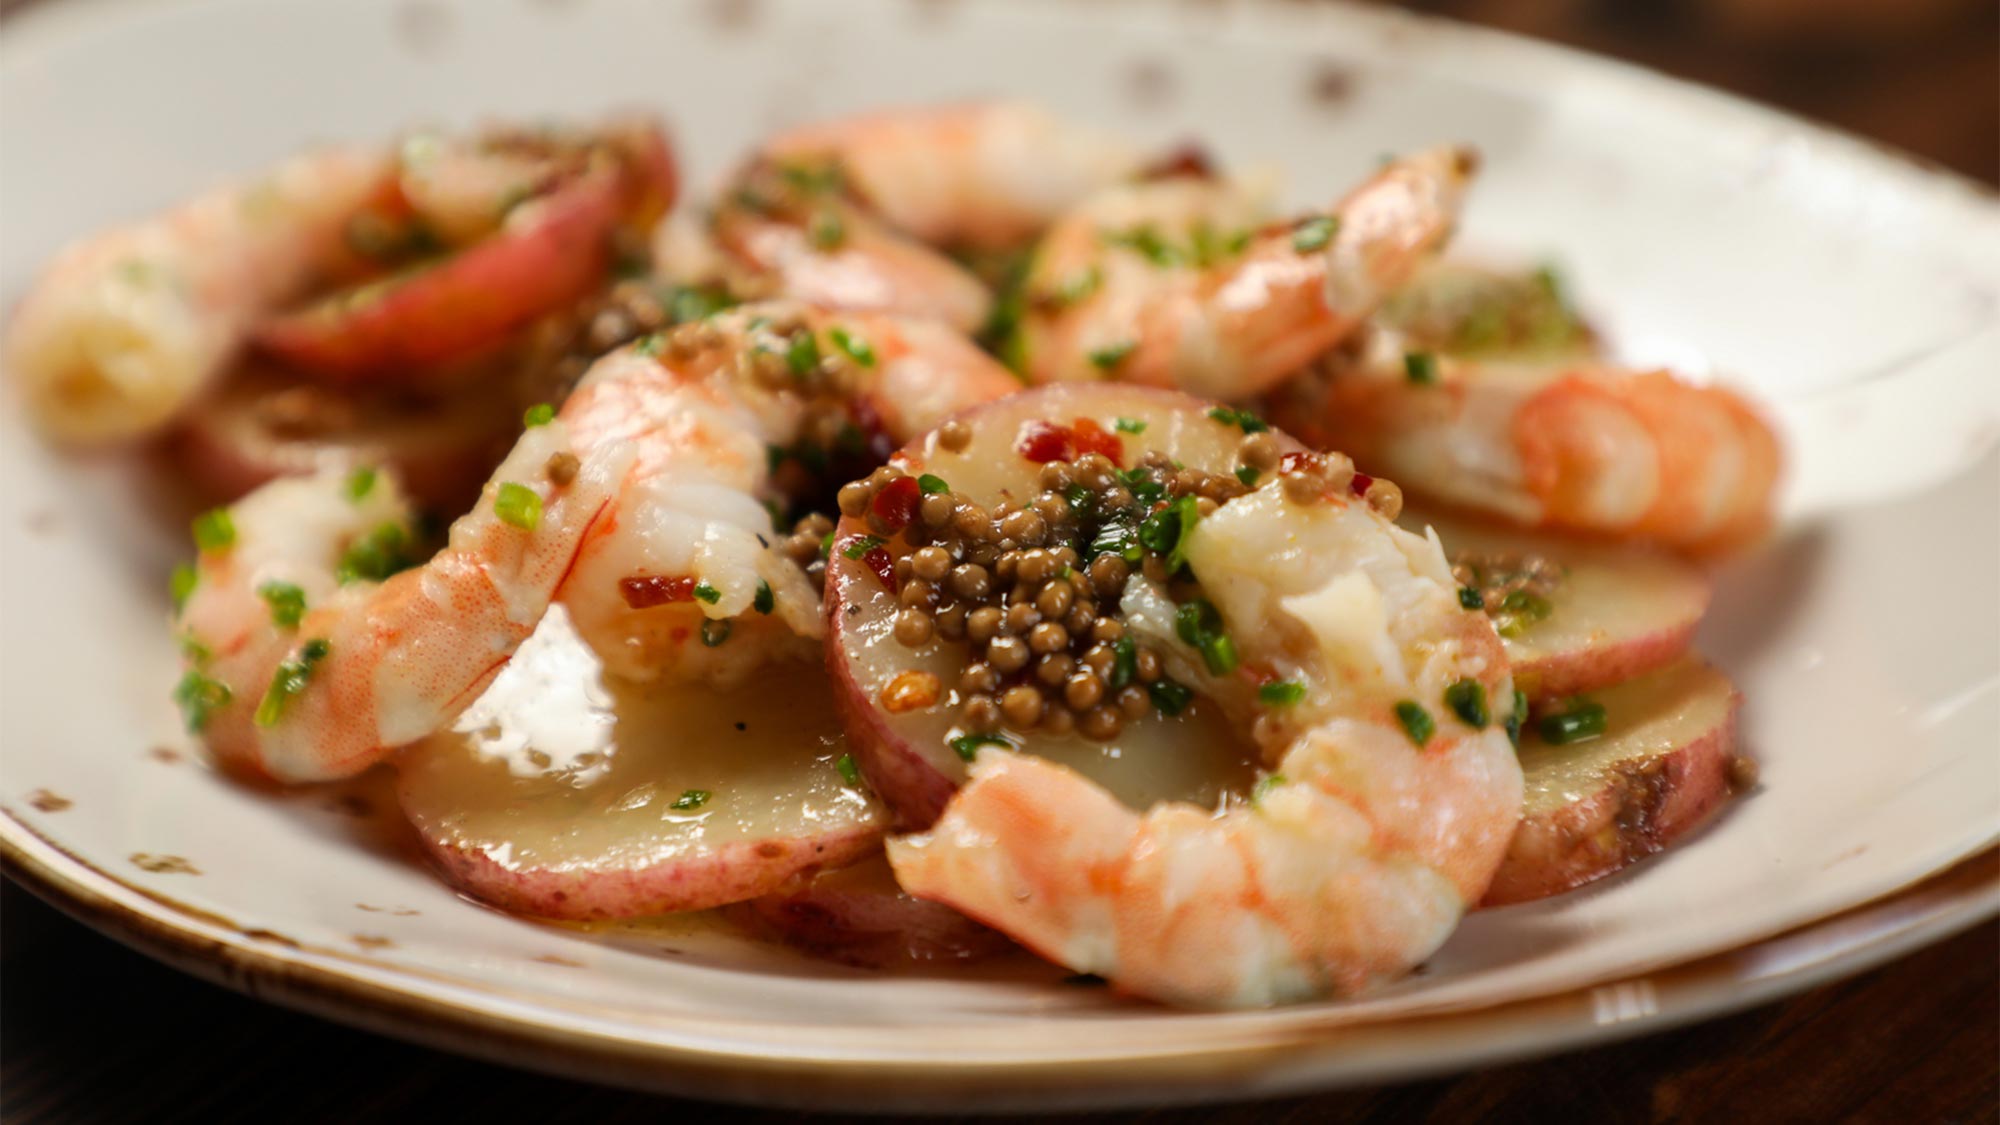 Shrimp and caviar at Plates Restaurant